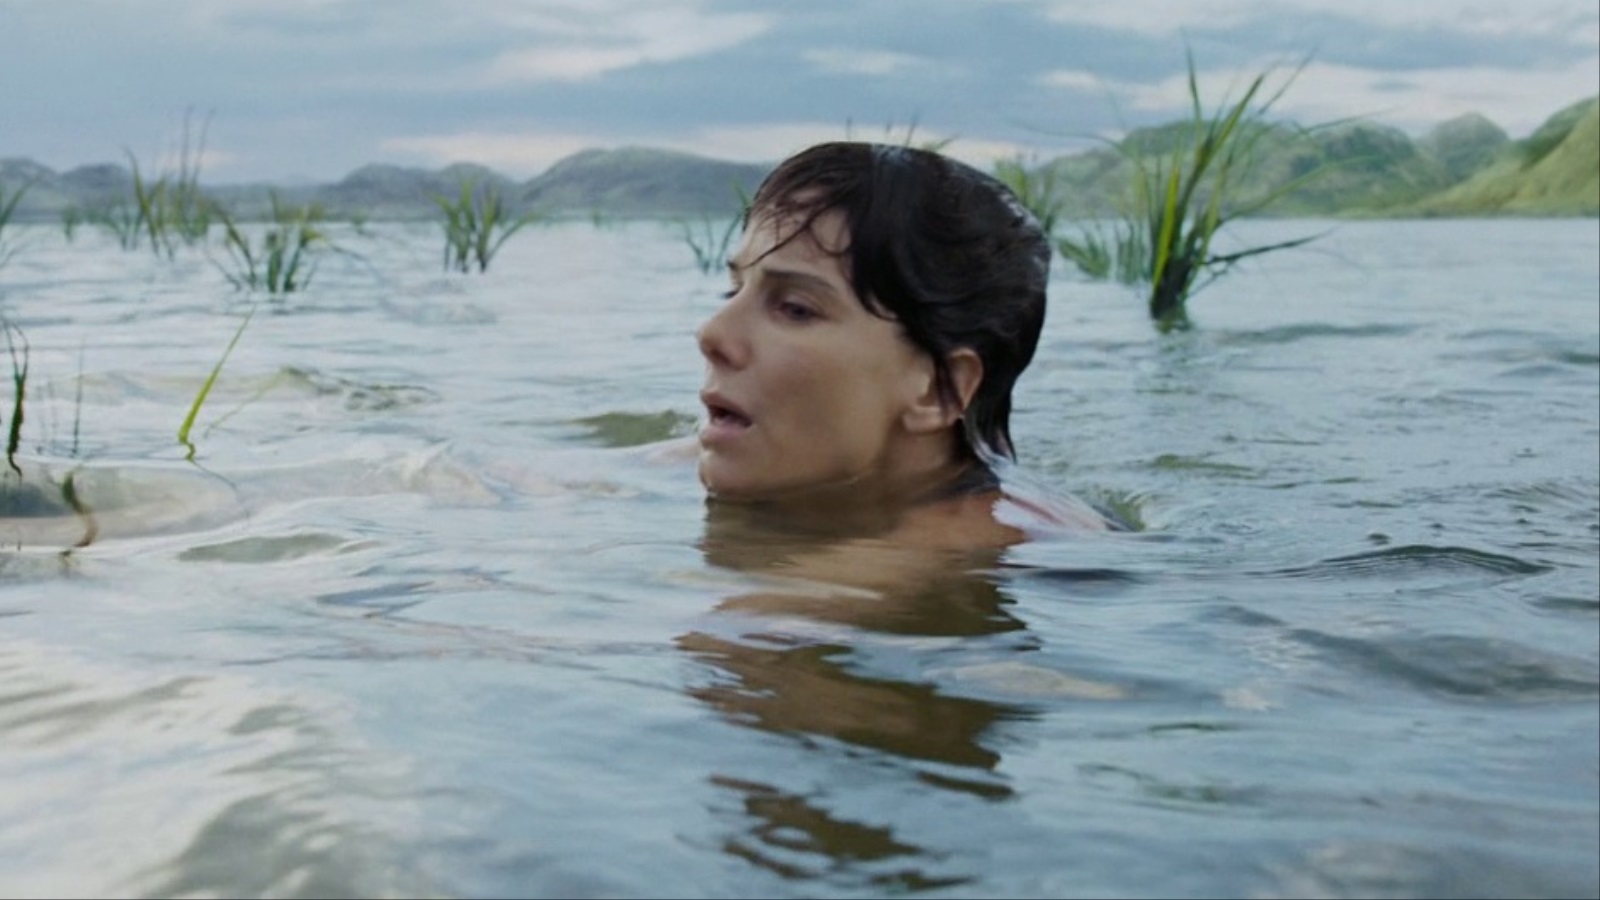 الماء في أفلام ألفونسو كوارون يغسل الشخصيات من آلامها، ويُعمّد انبعاثهم الجديد في الحياة بعد أن أصقلتهم التجربة وأنضجتهم الرحلة